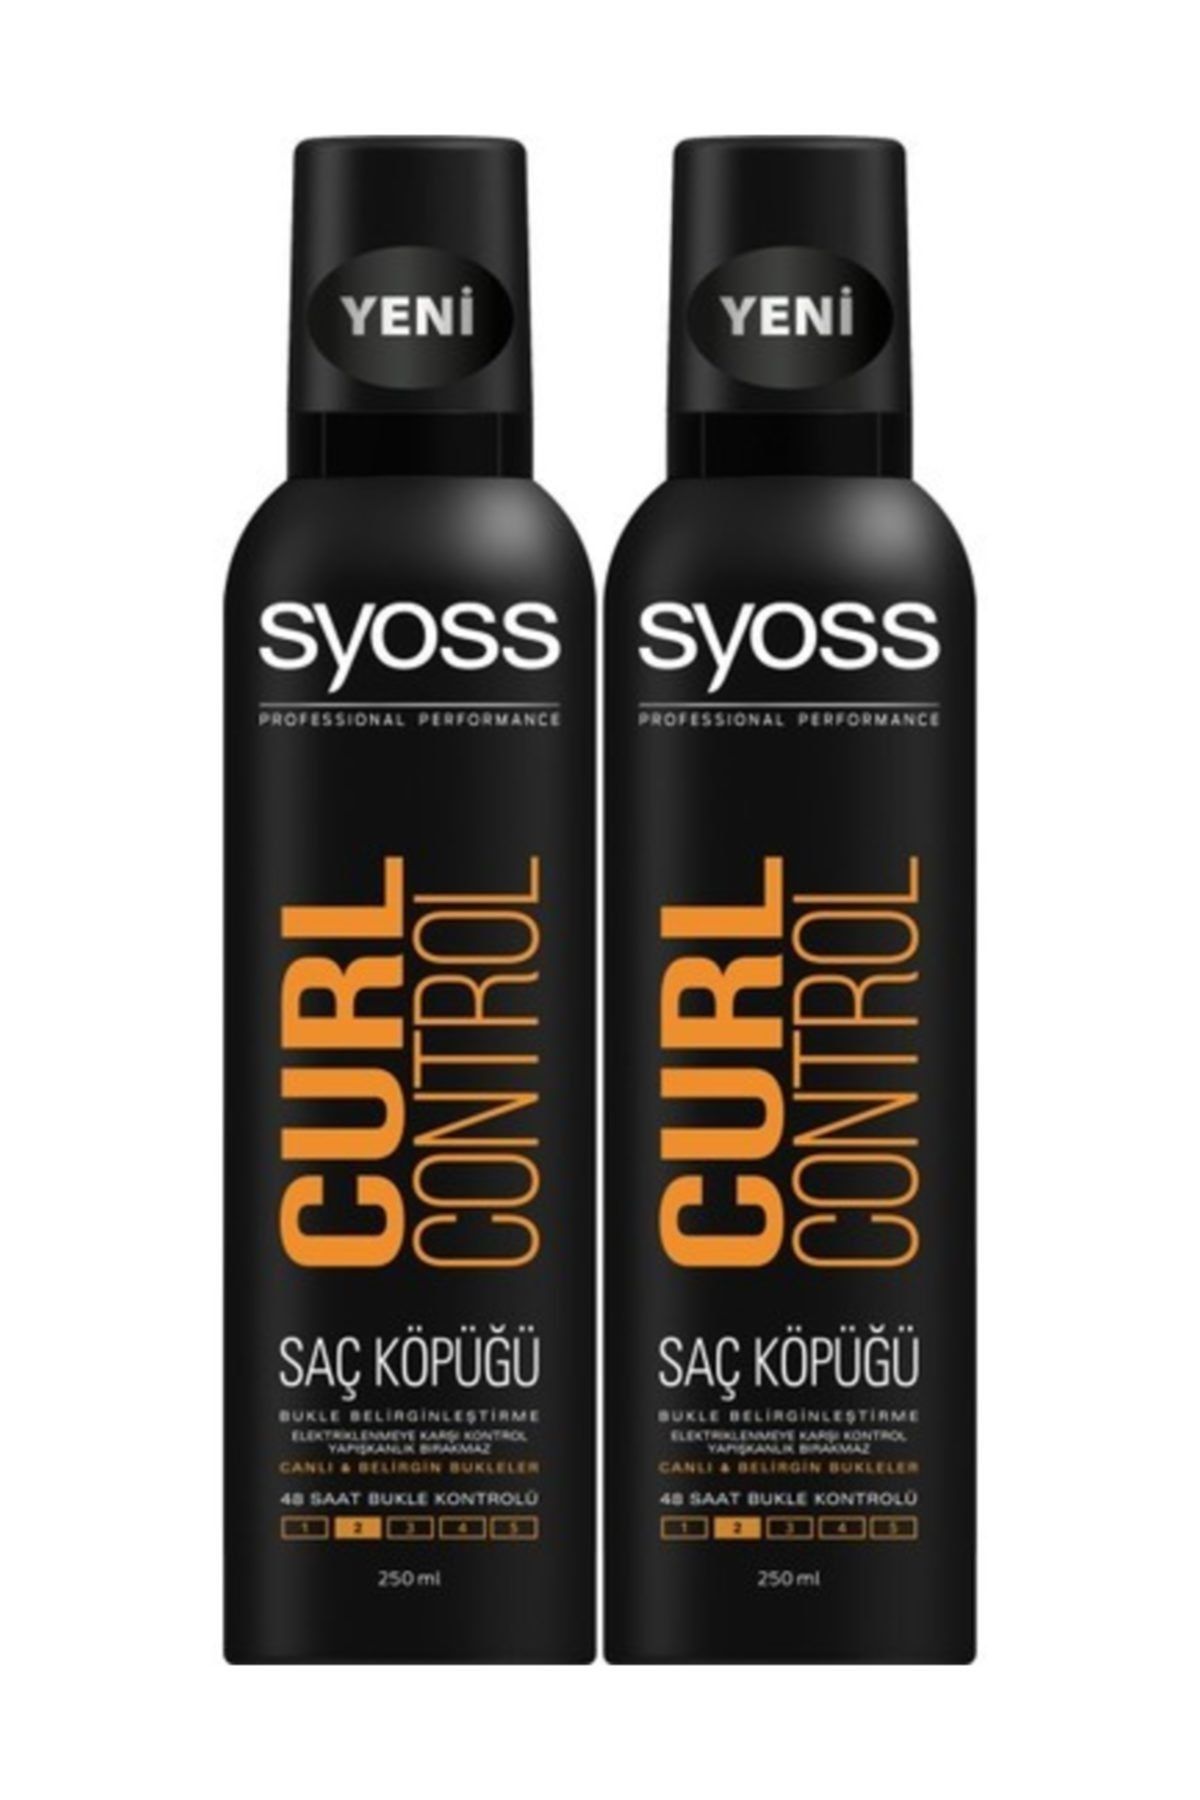 Syoss Curl Control- Bukle Belirginleştirici Köpük 250 ml x 2 Adet